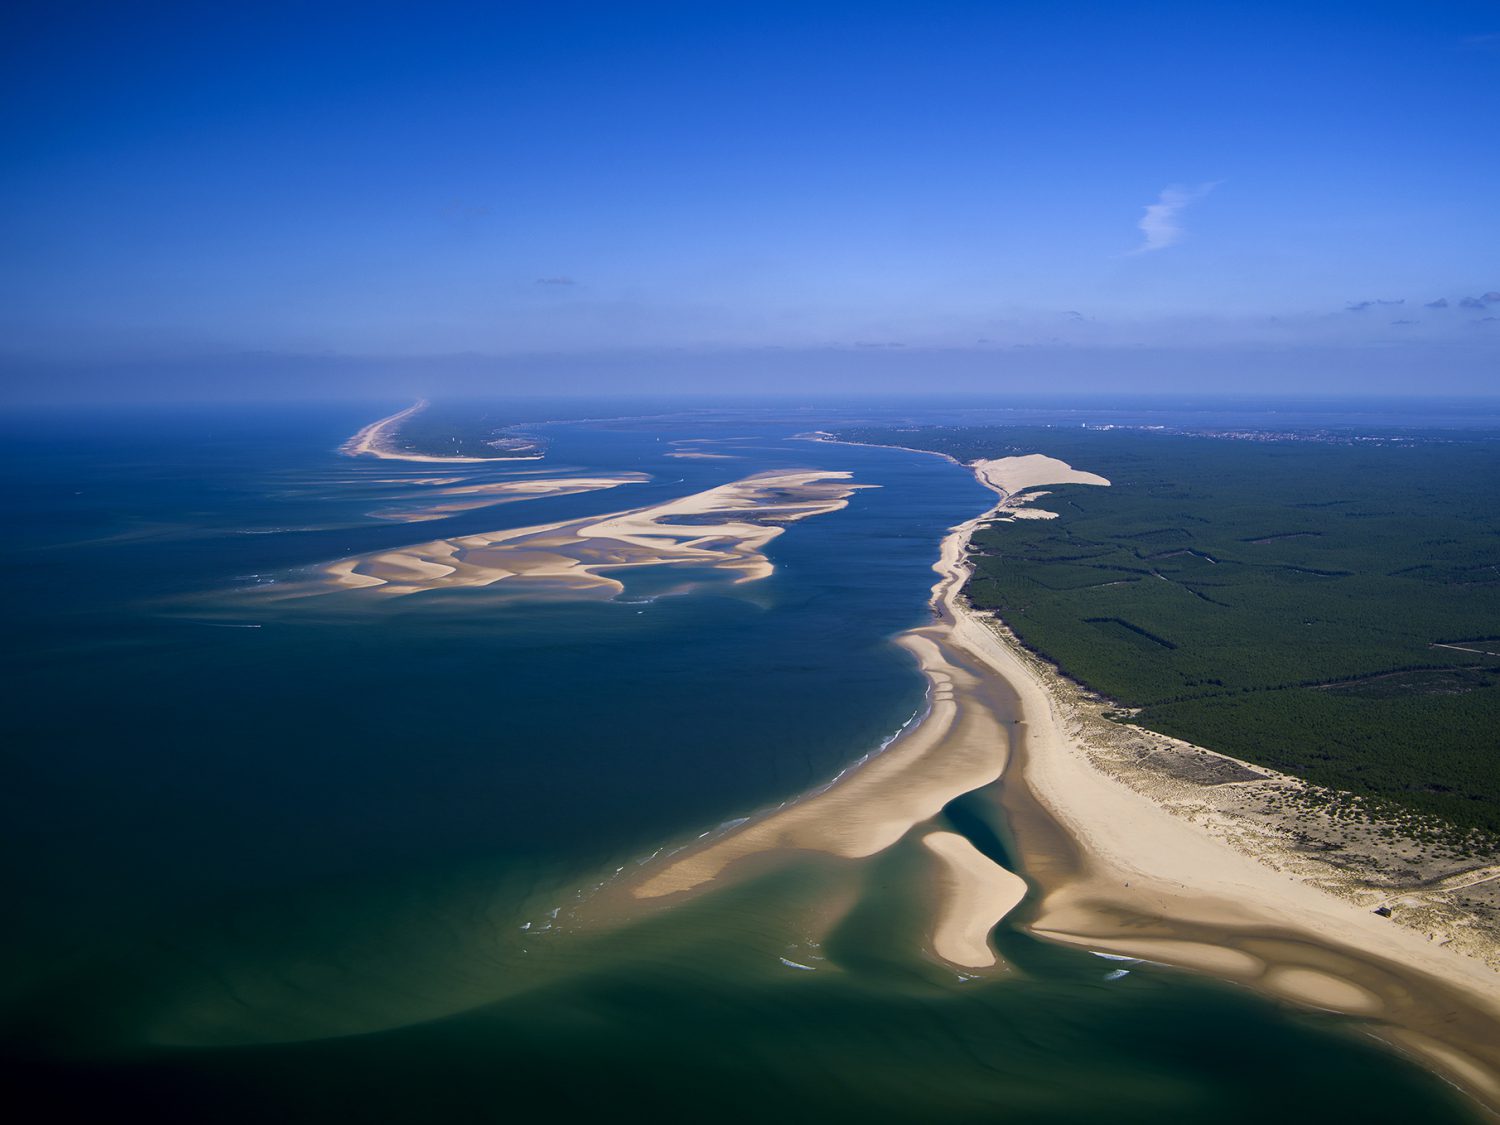 vue aérienne des passes du bassin d'arcachon par le photographe Stéphane Scotto